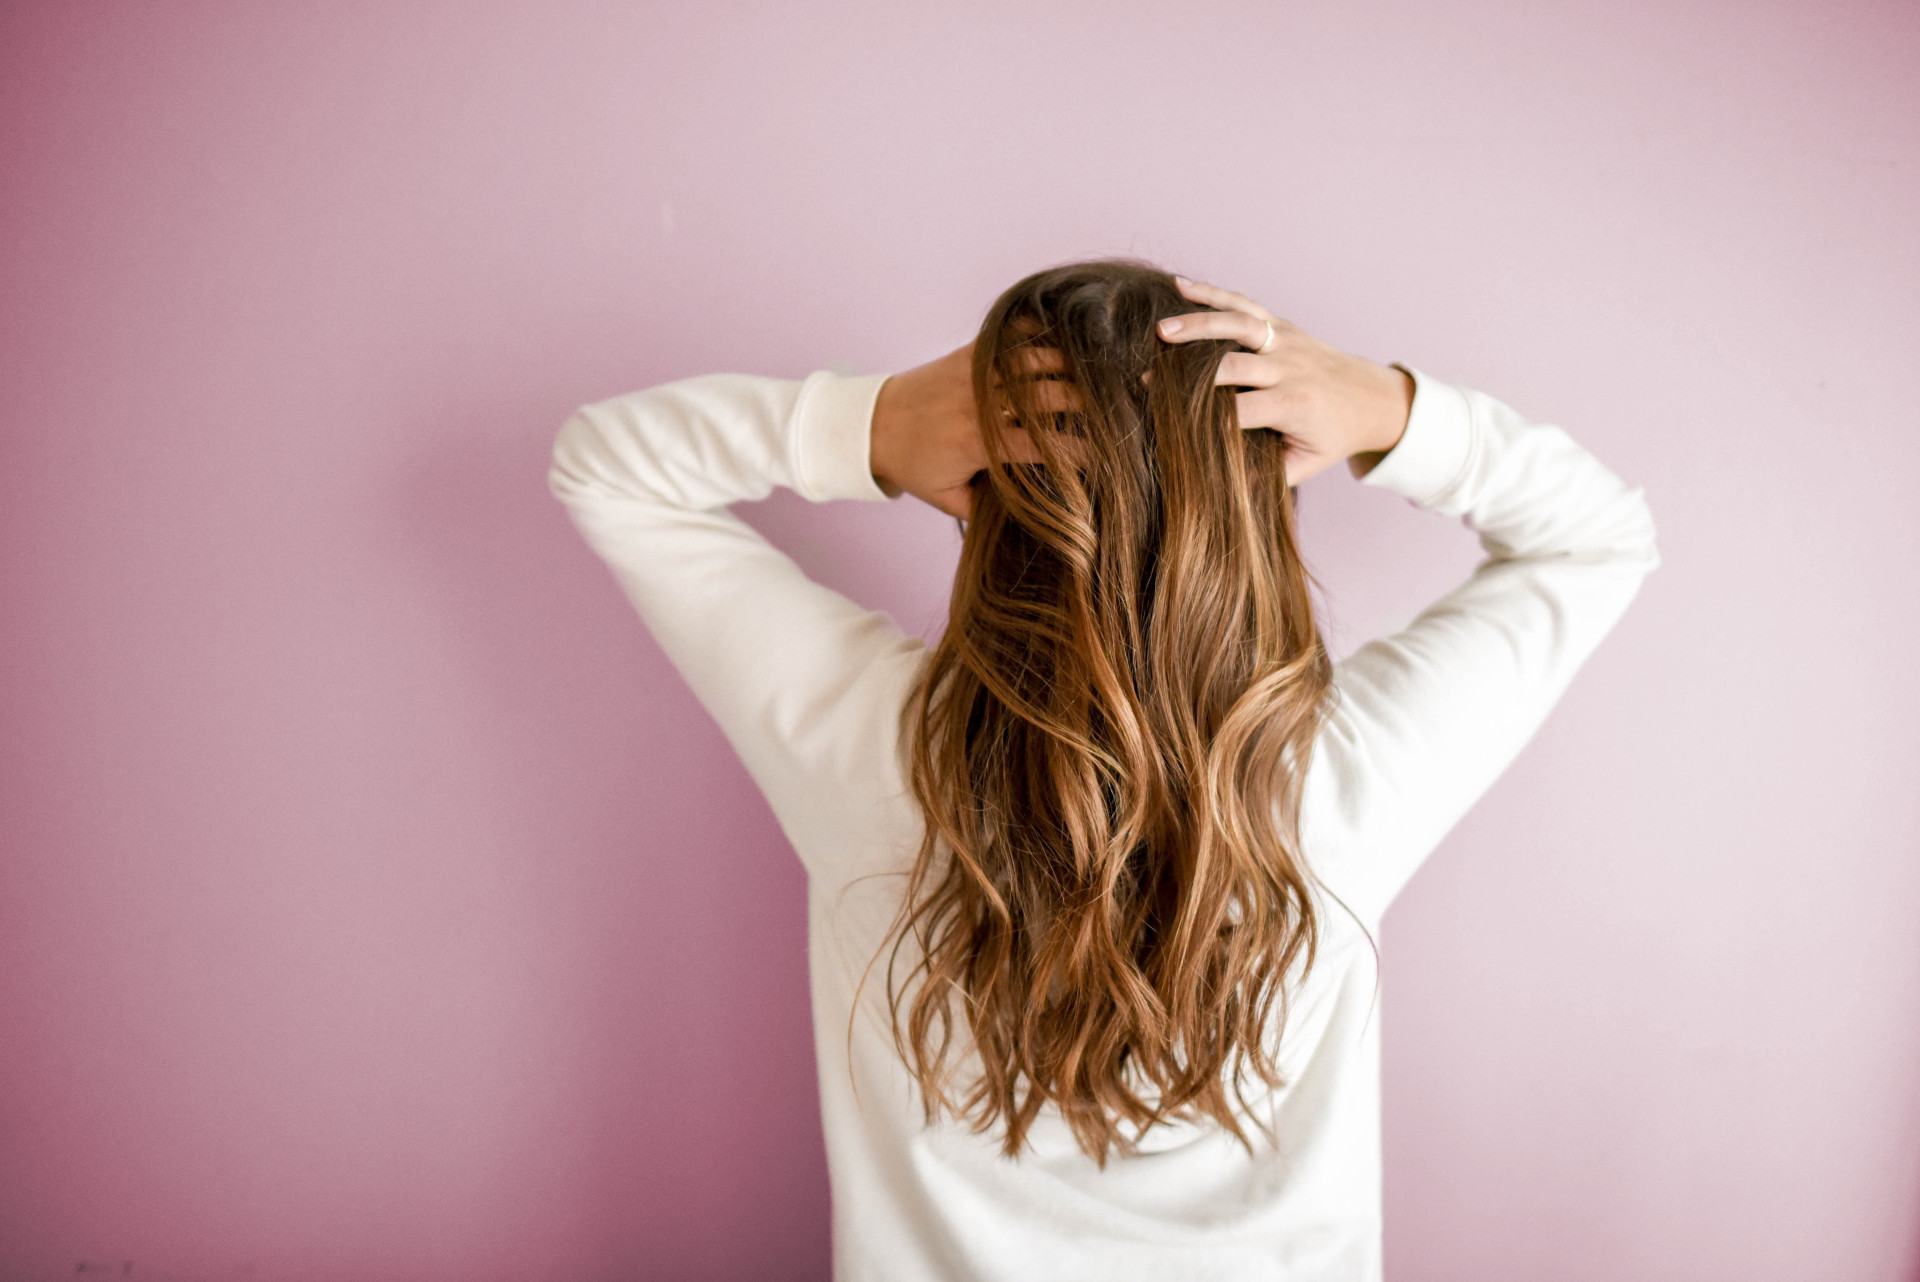 Comment faire devenir ses cheveux plus épais, naturels et brillants